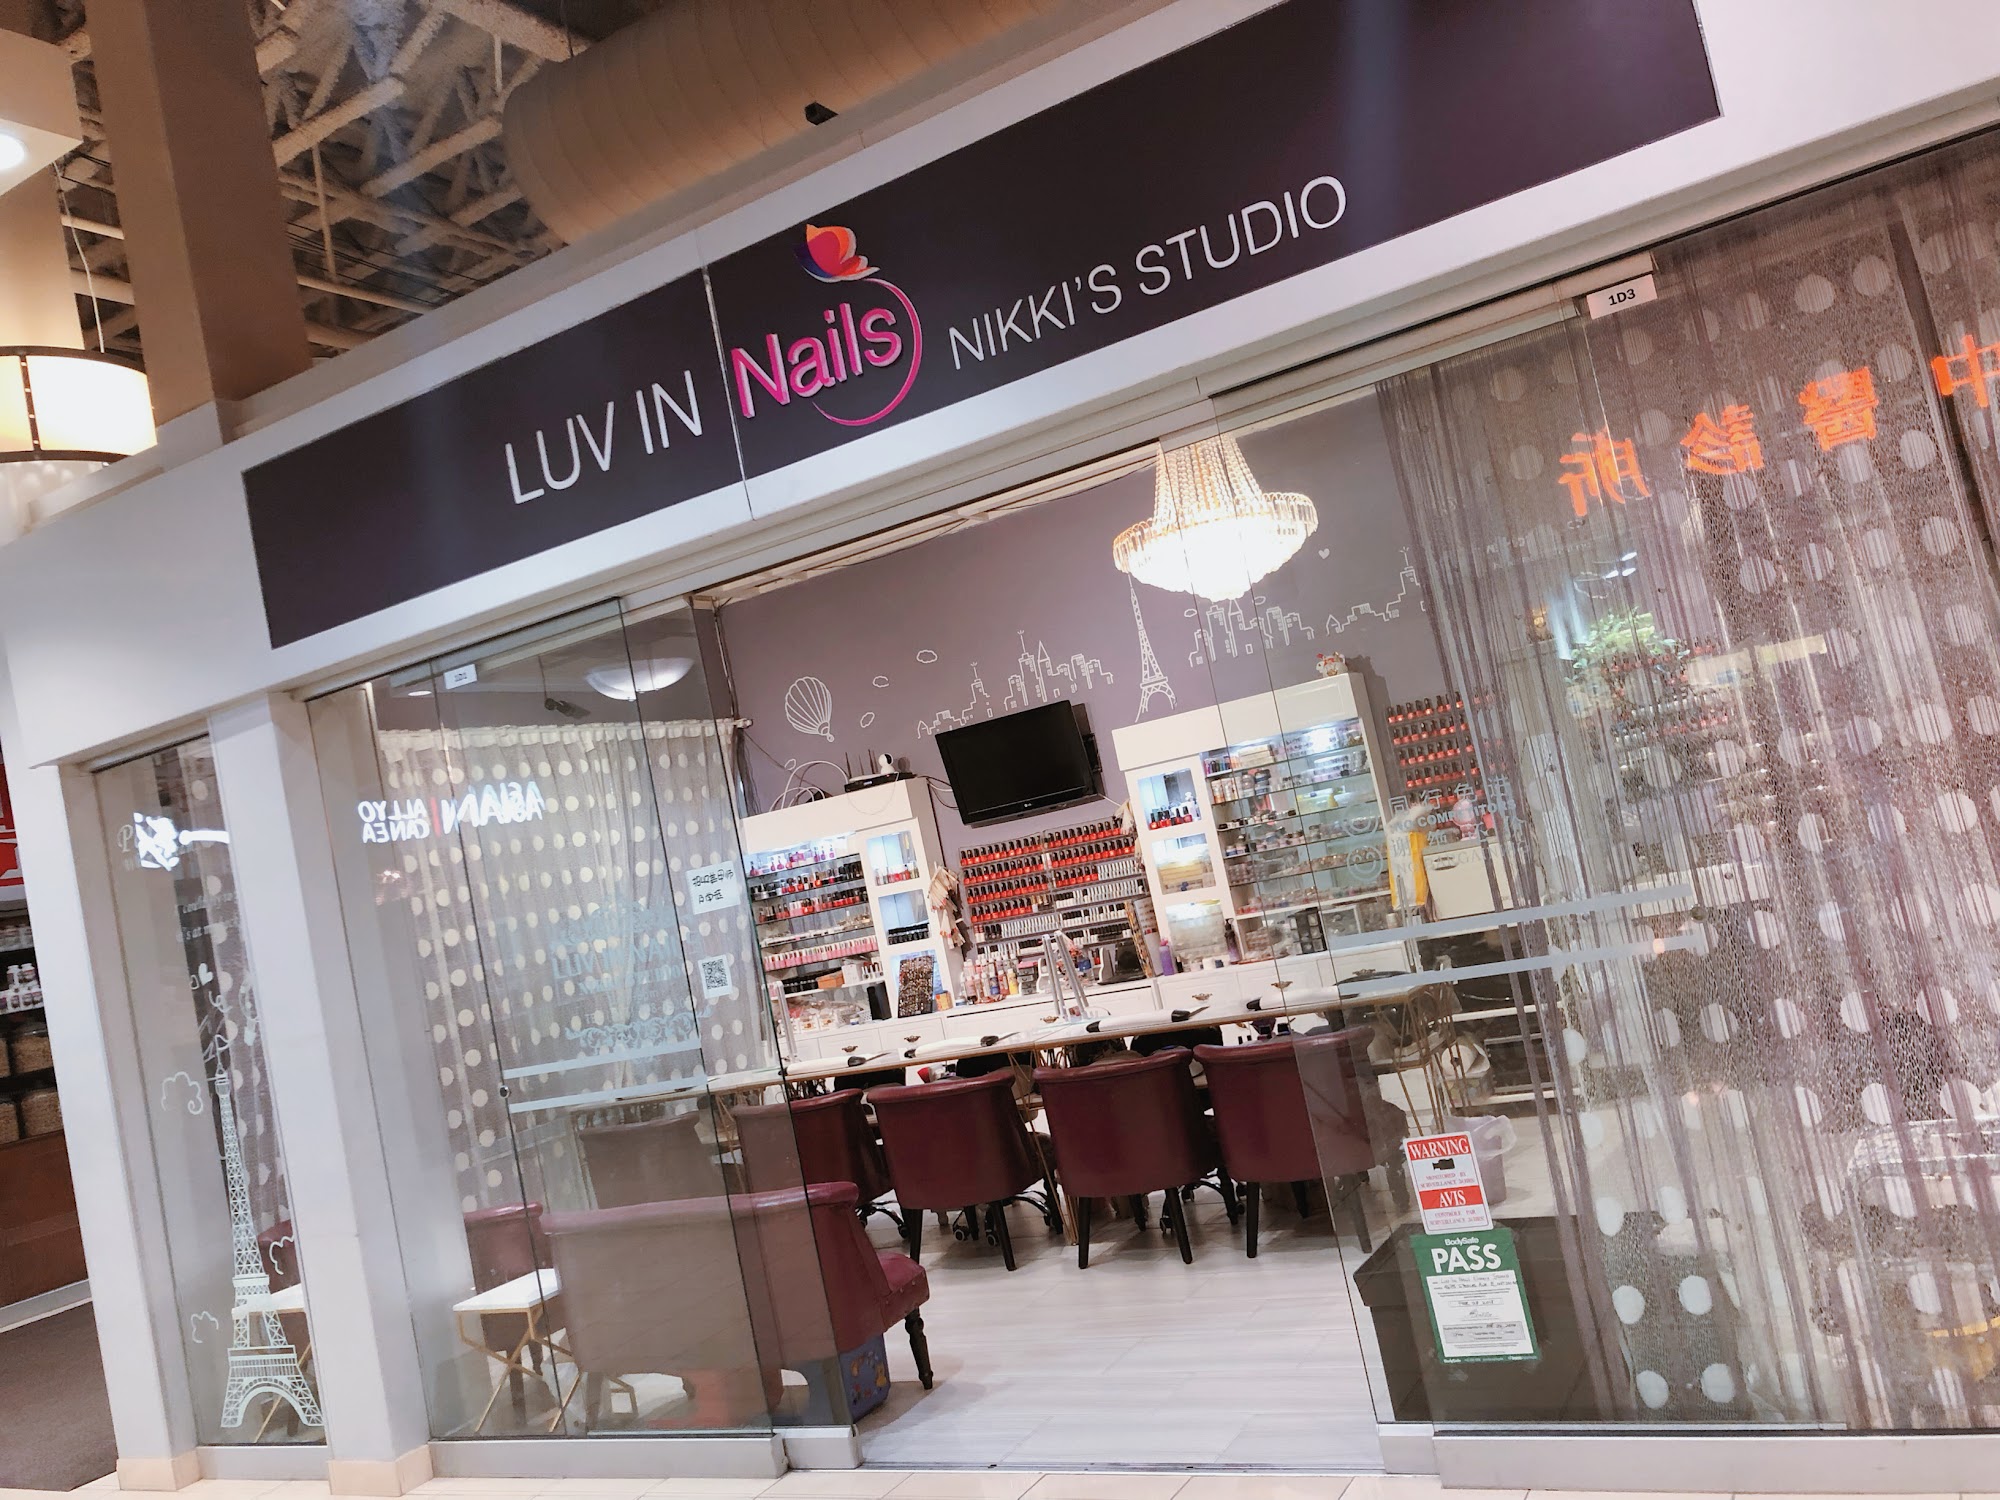 Luv'in Nails Nikki Studio